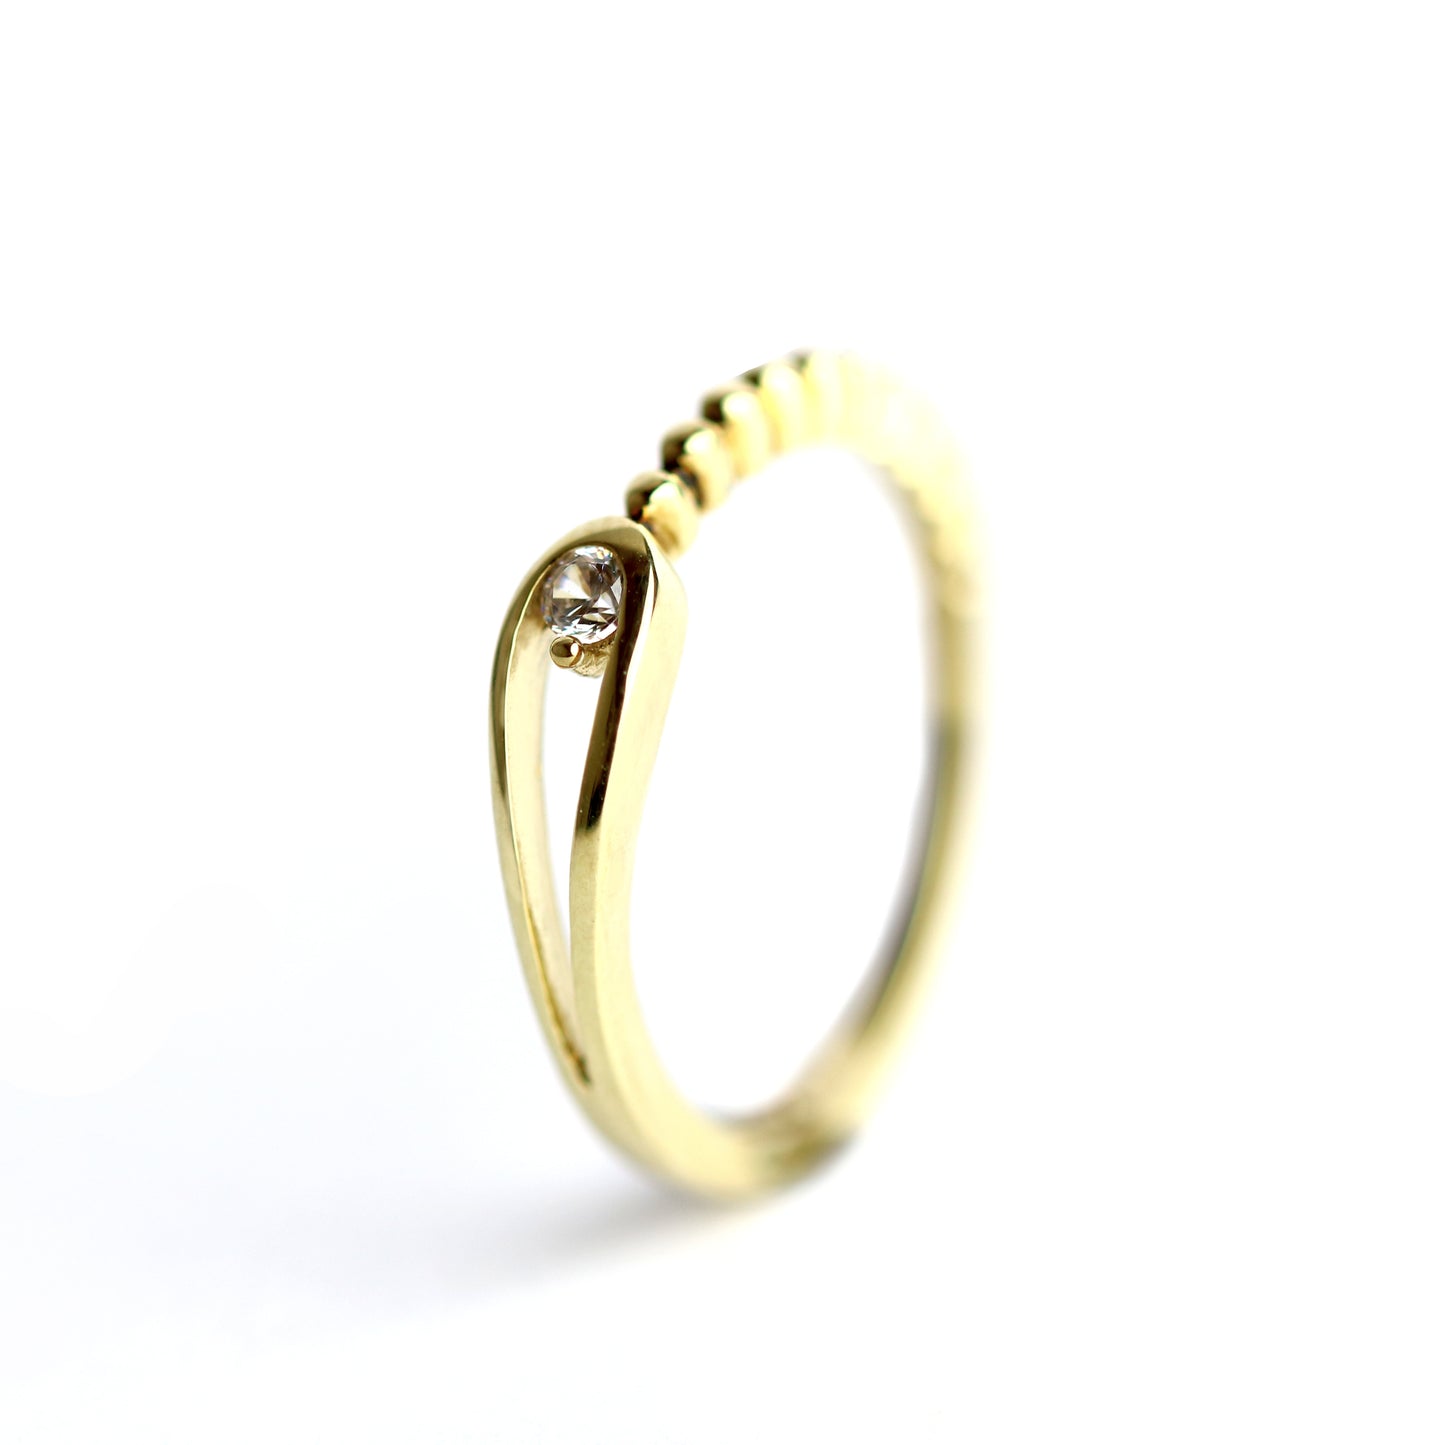 WILHELM MÜLLER - Ring in Gold mit halber Kugelform und Zirkonia